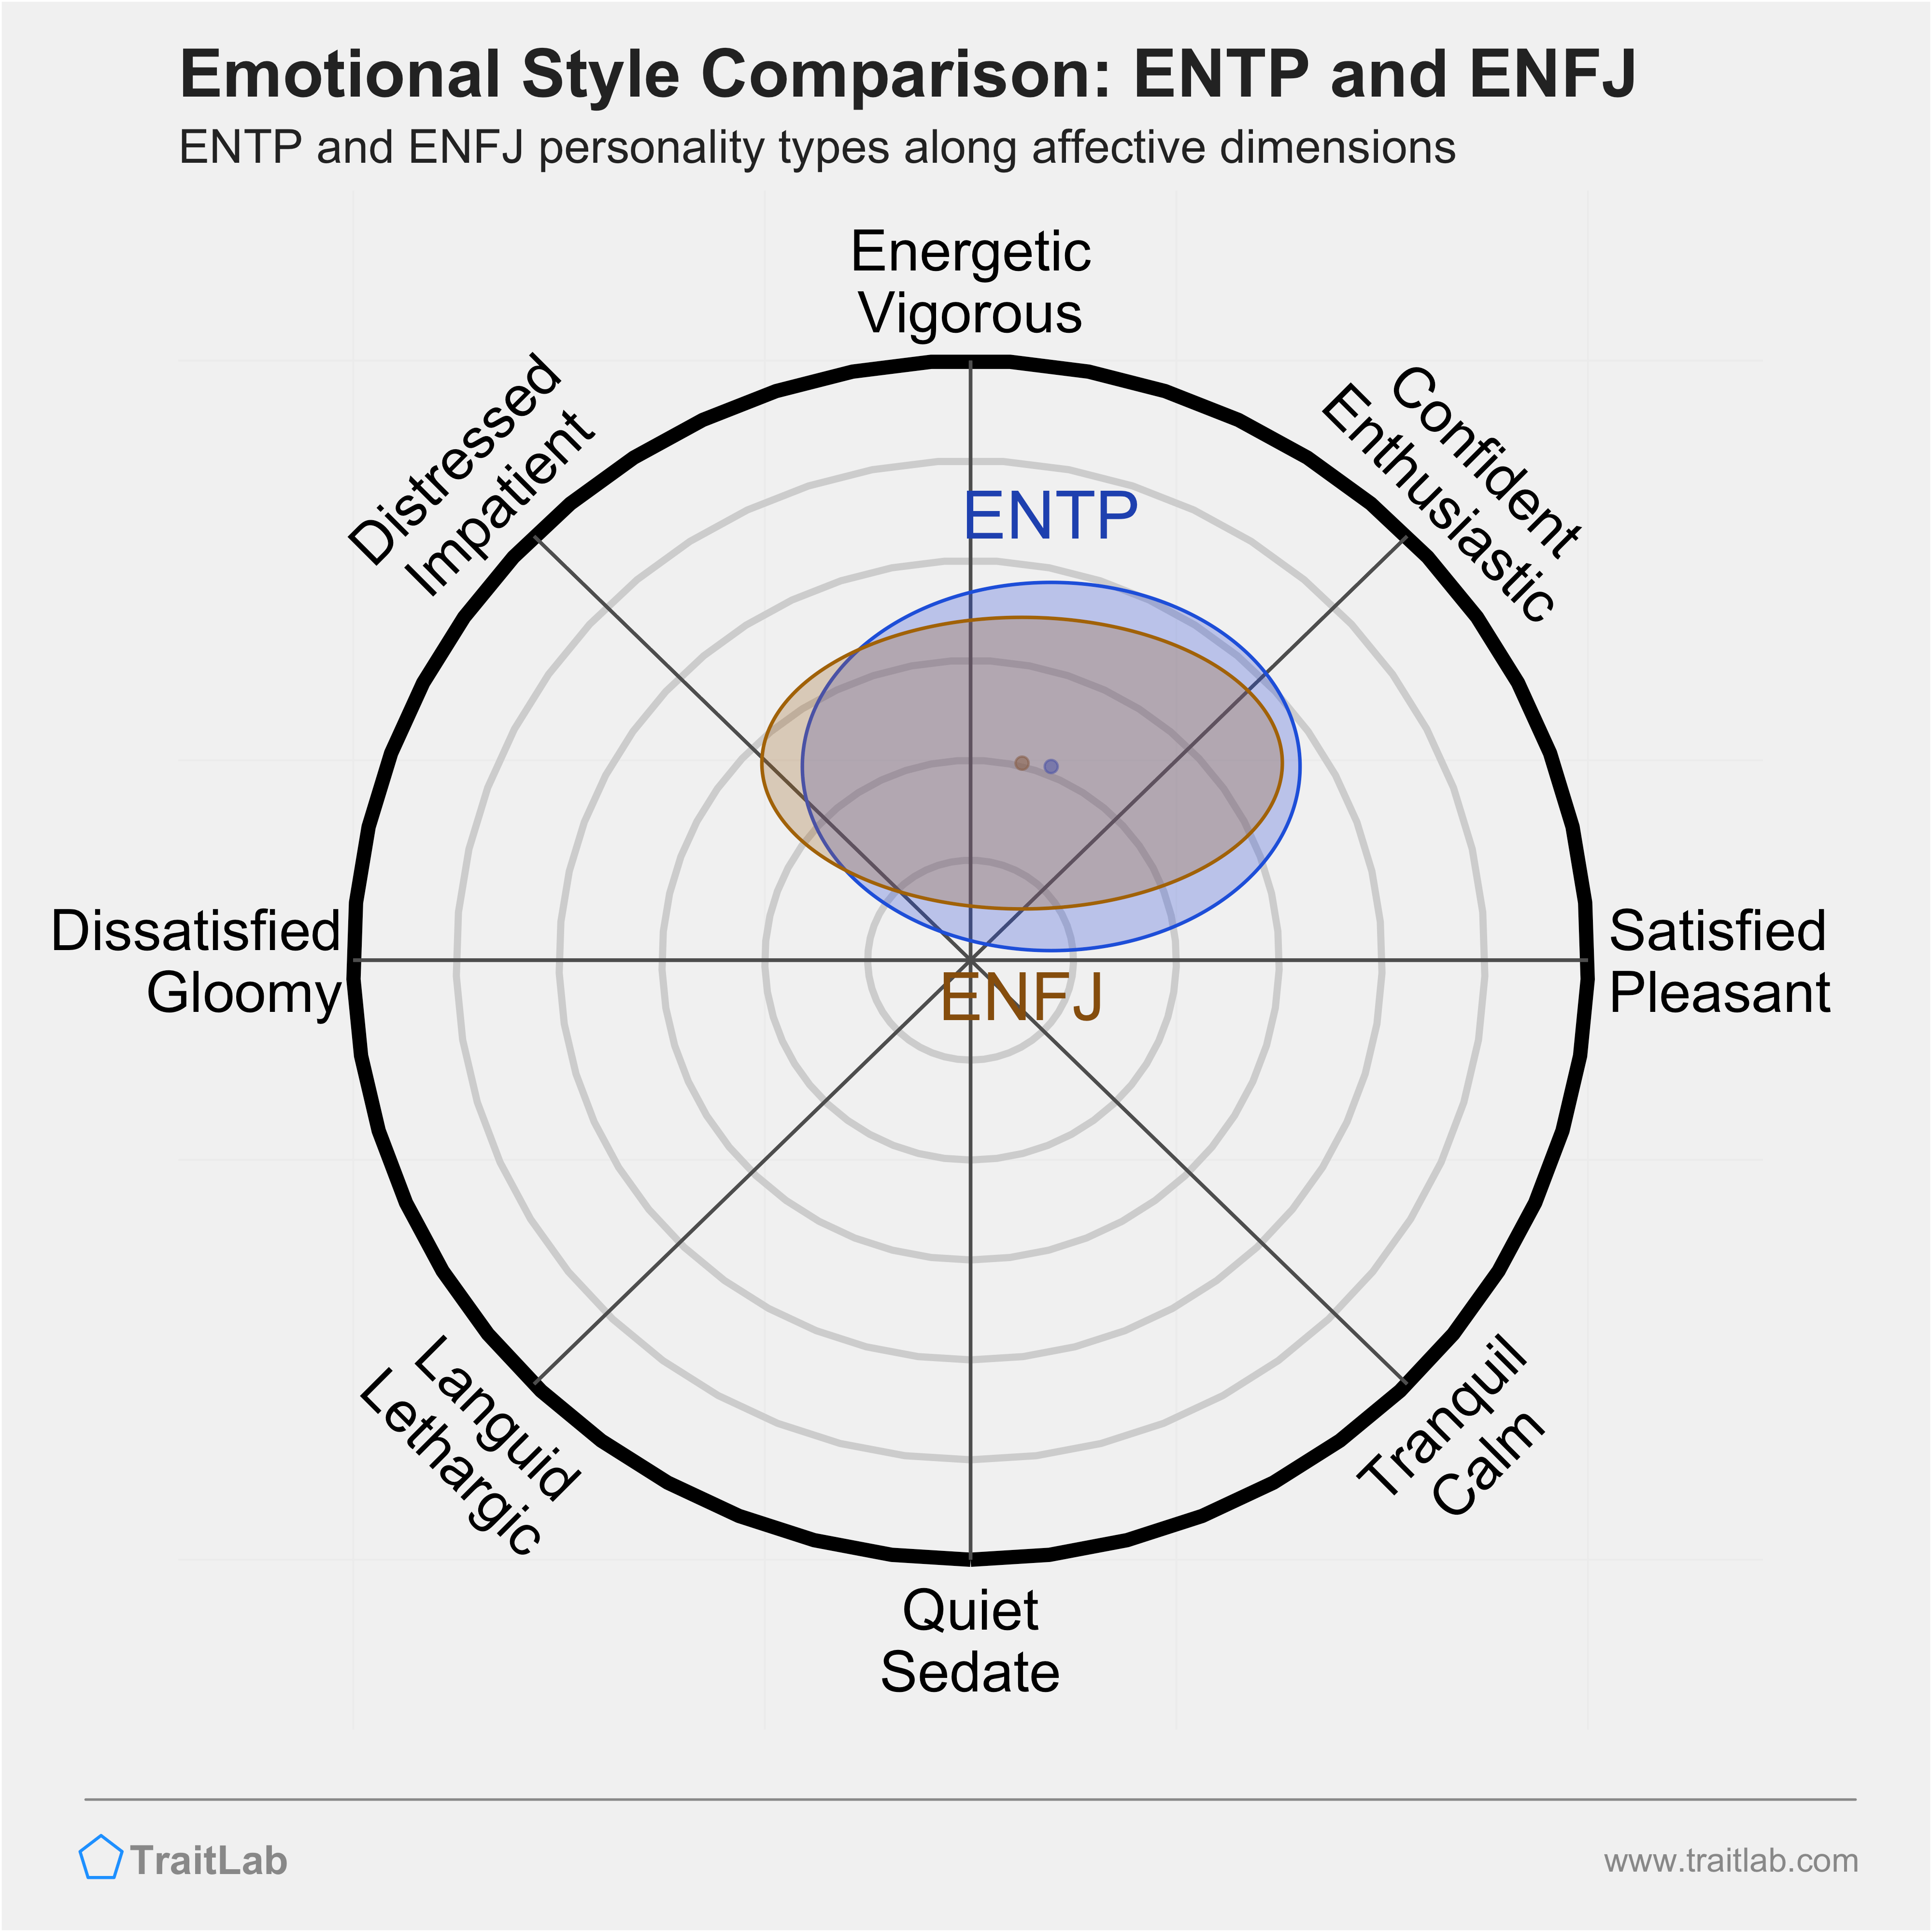 ENTP and ENFJ comparison across emotional (affective) dimensions